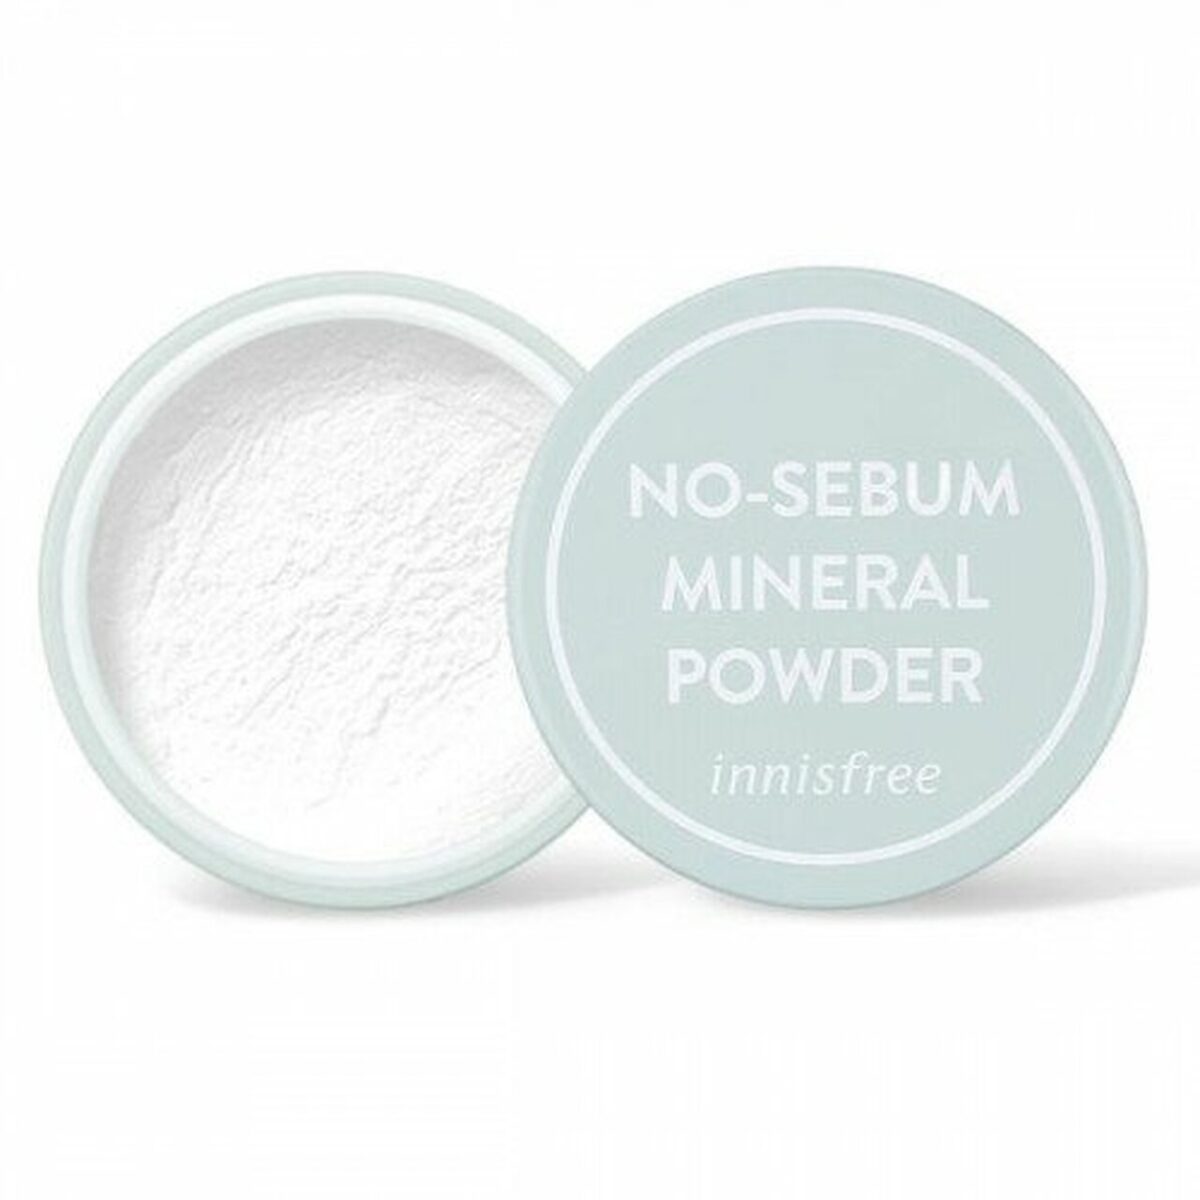 no-sebum mineral powder innisfree